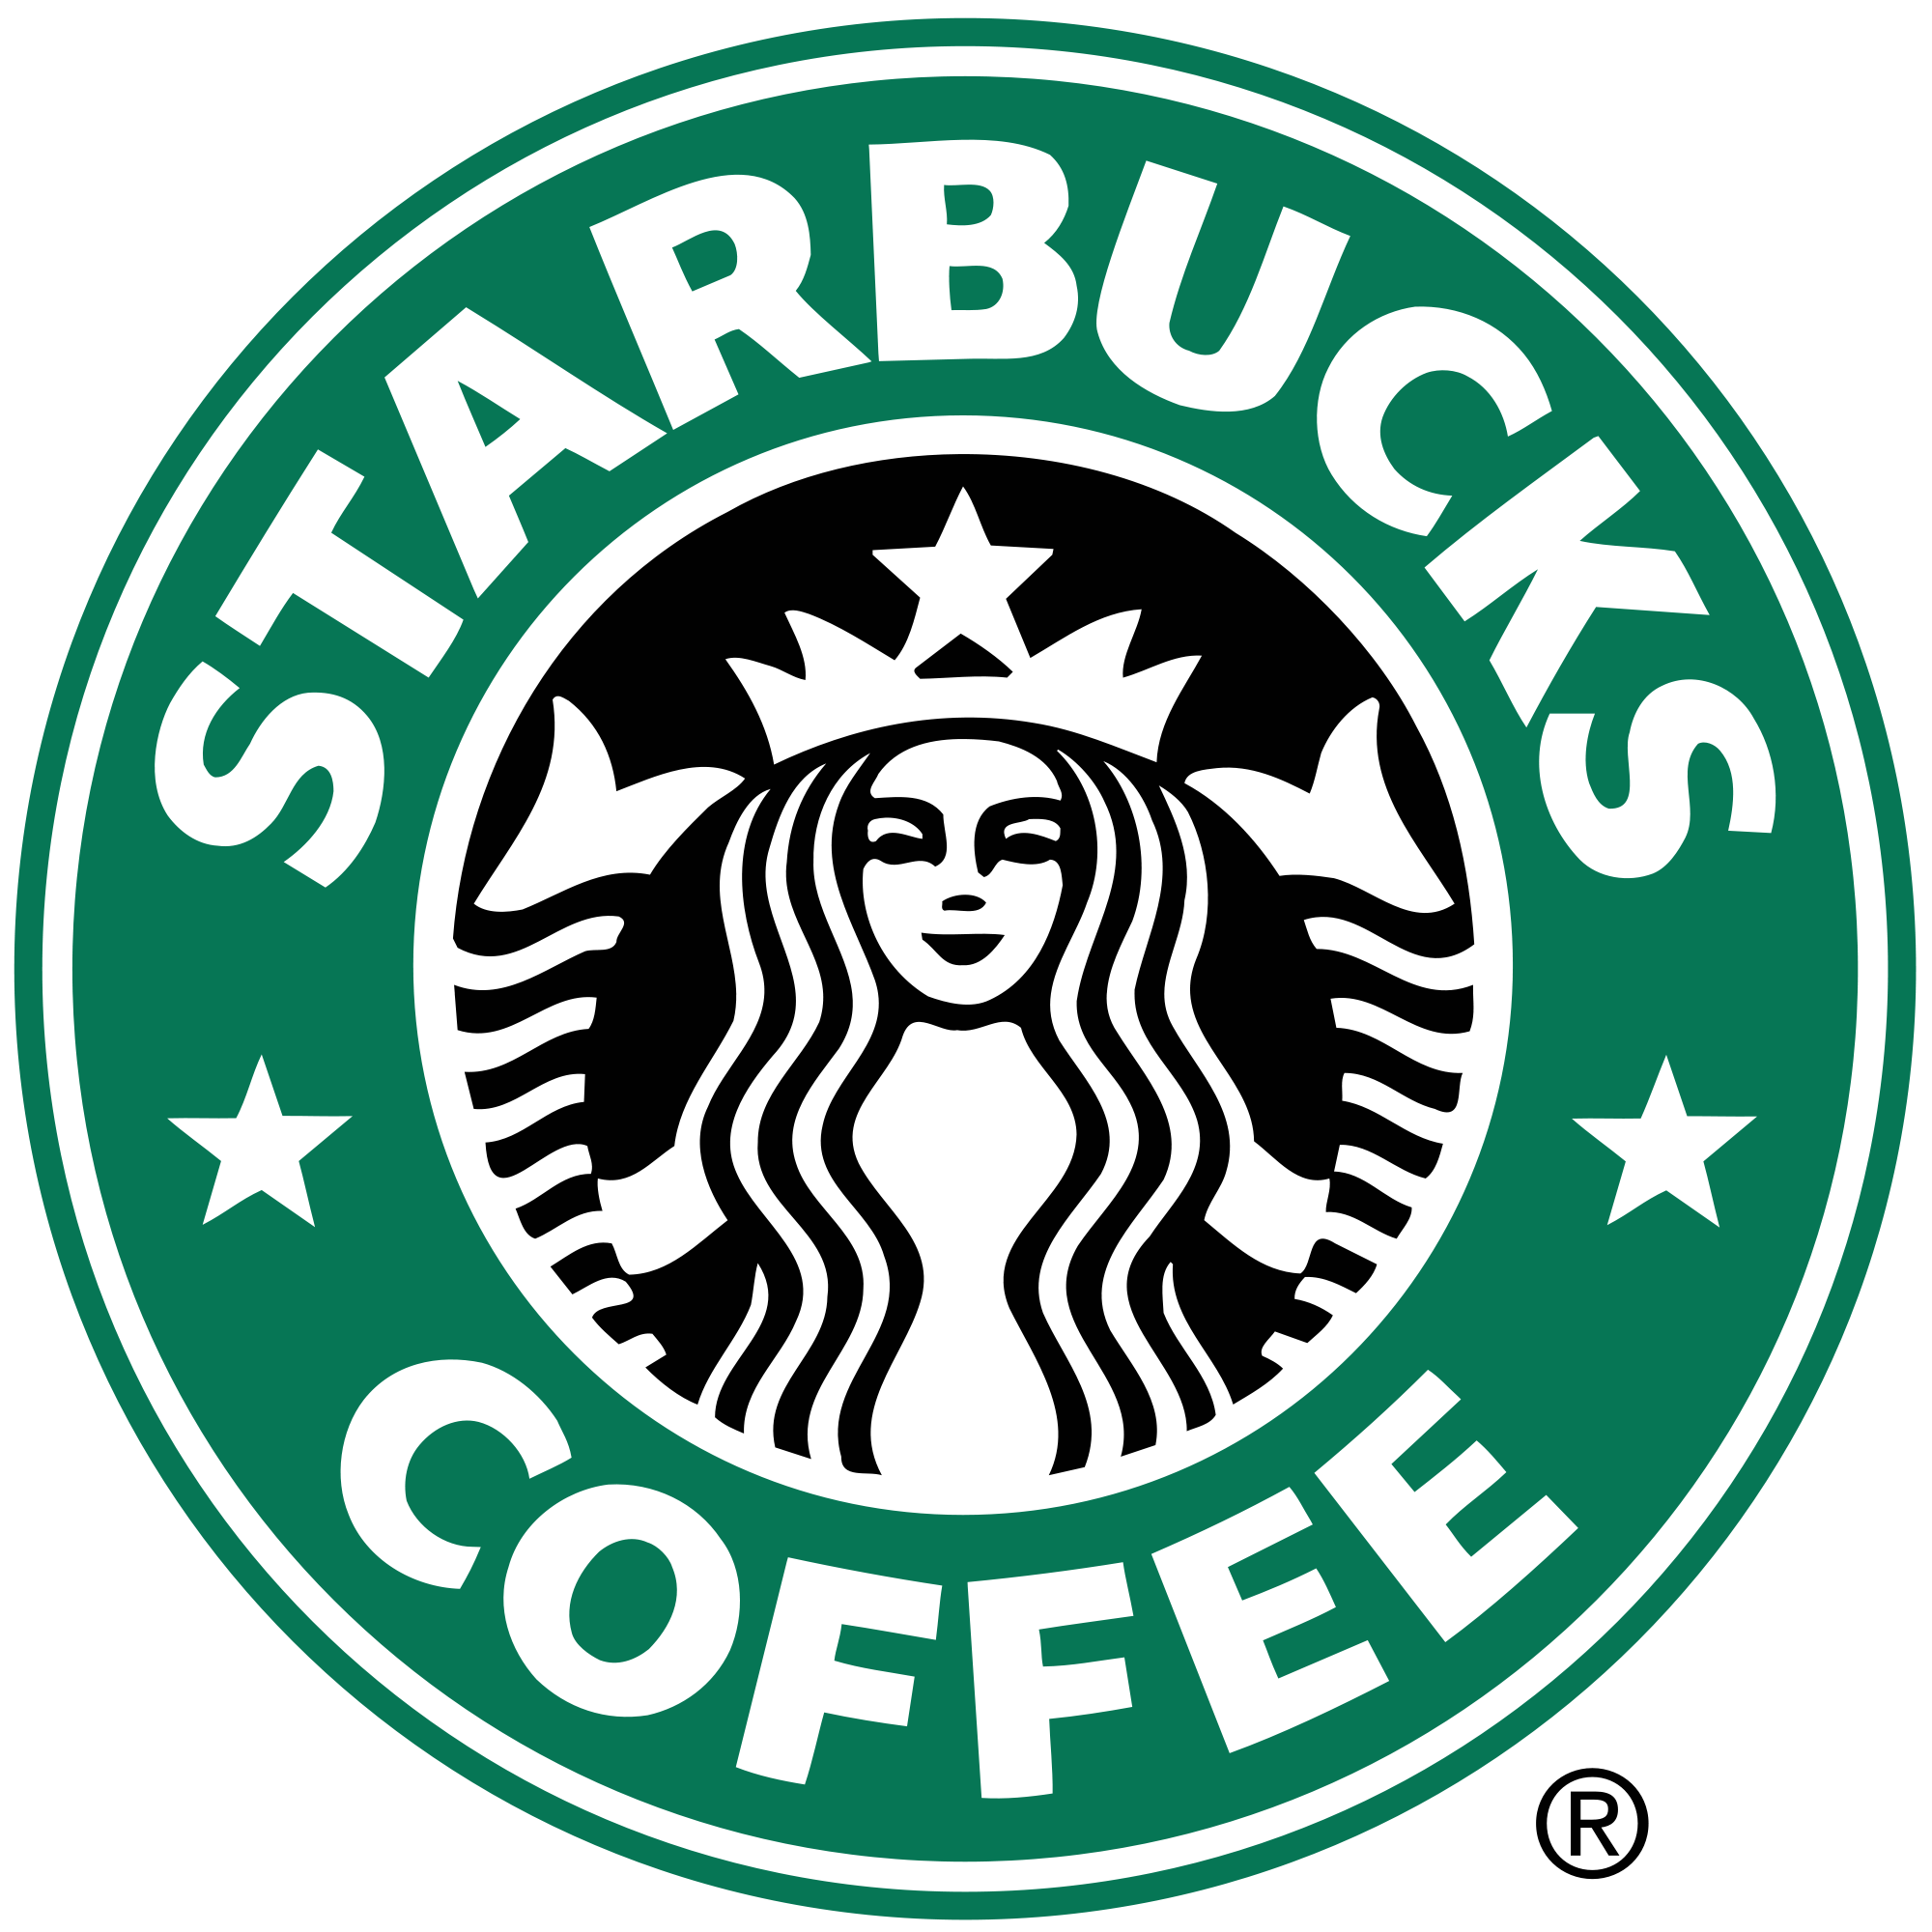 File:Starbucks logo 2011.png